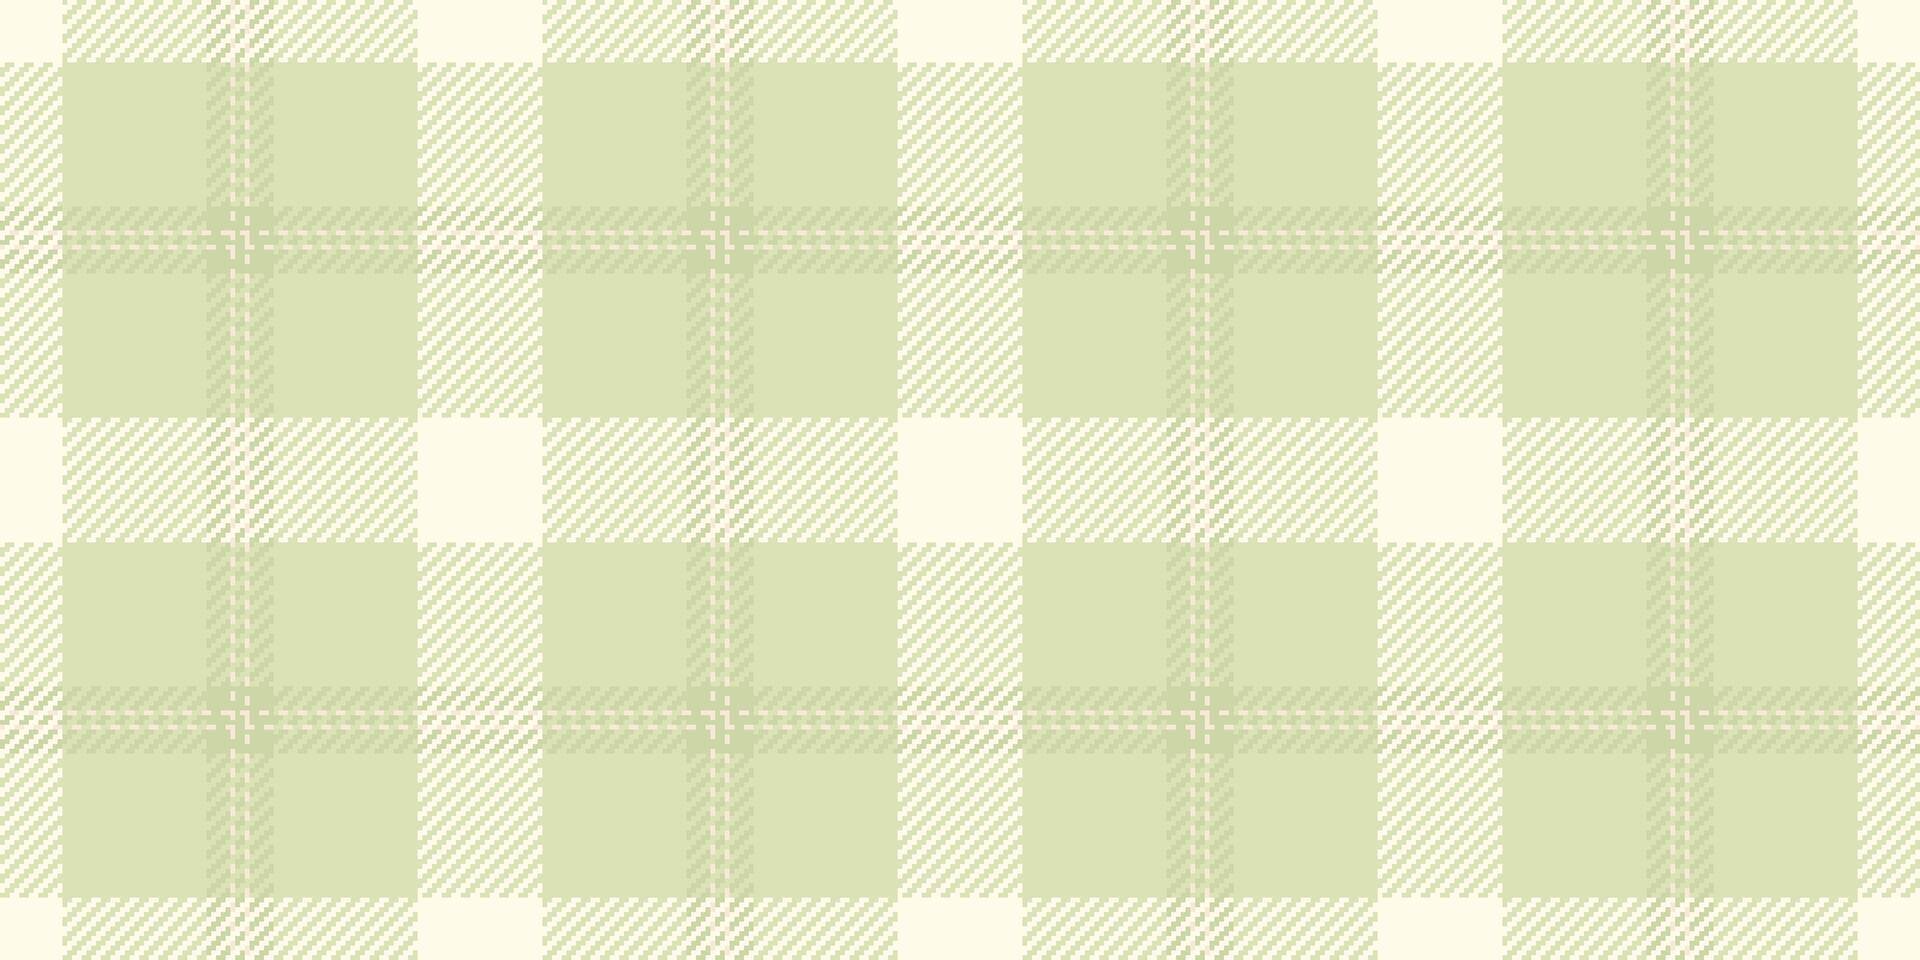 Single Stoff Textil- Plaid, repetitiv Tartan nahtlos Textur. Sammlung Muster Hintergrund prüfen Vektor im Licht Farbe.